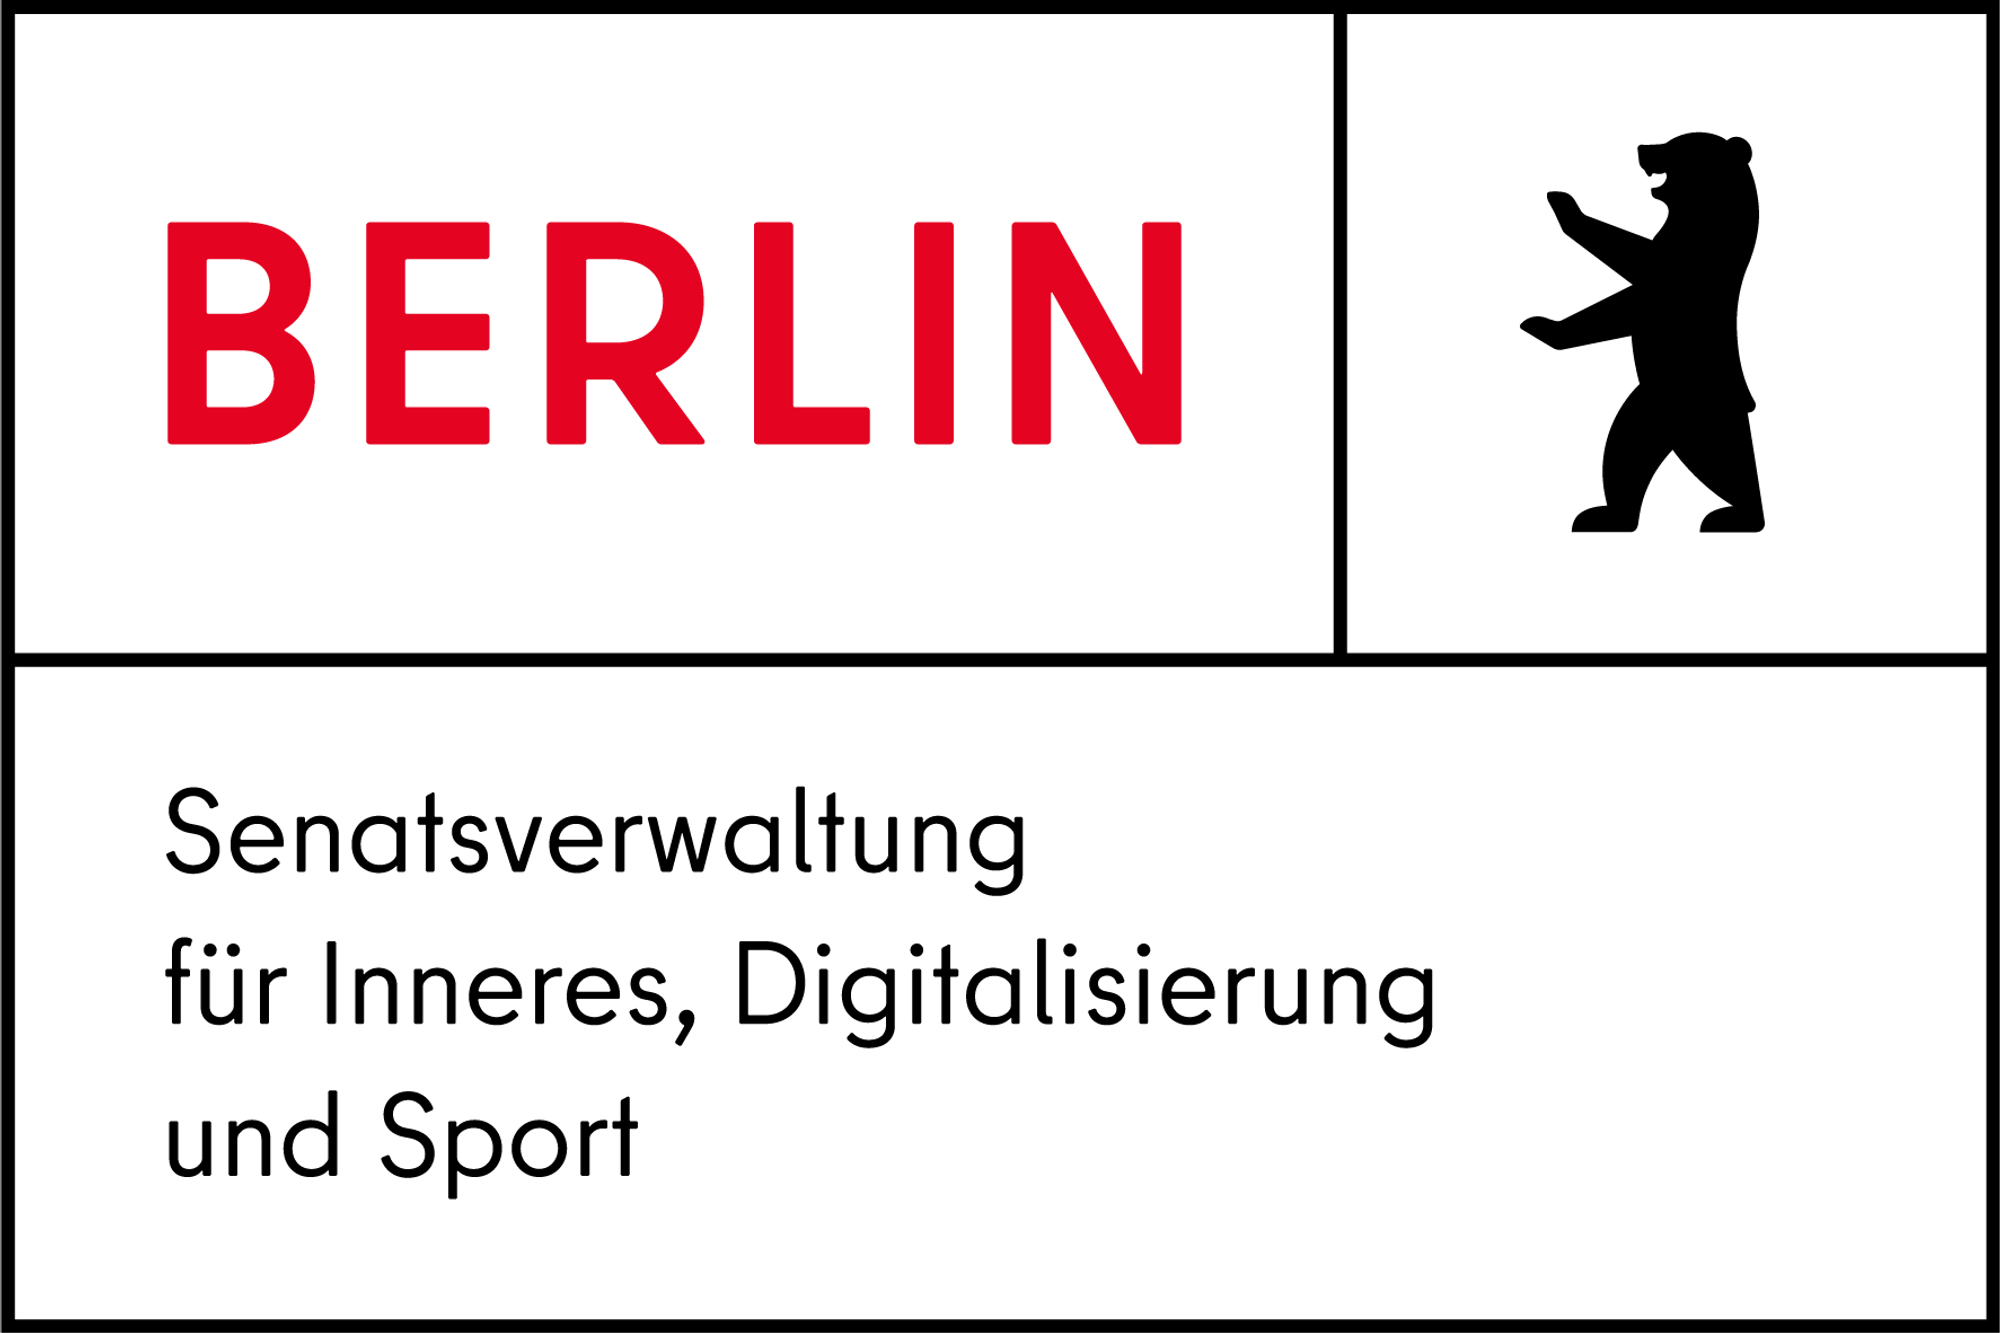 Logo of Senatsverwaltung fuer inneres, digitalisierung und sport